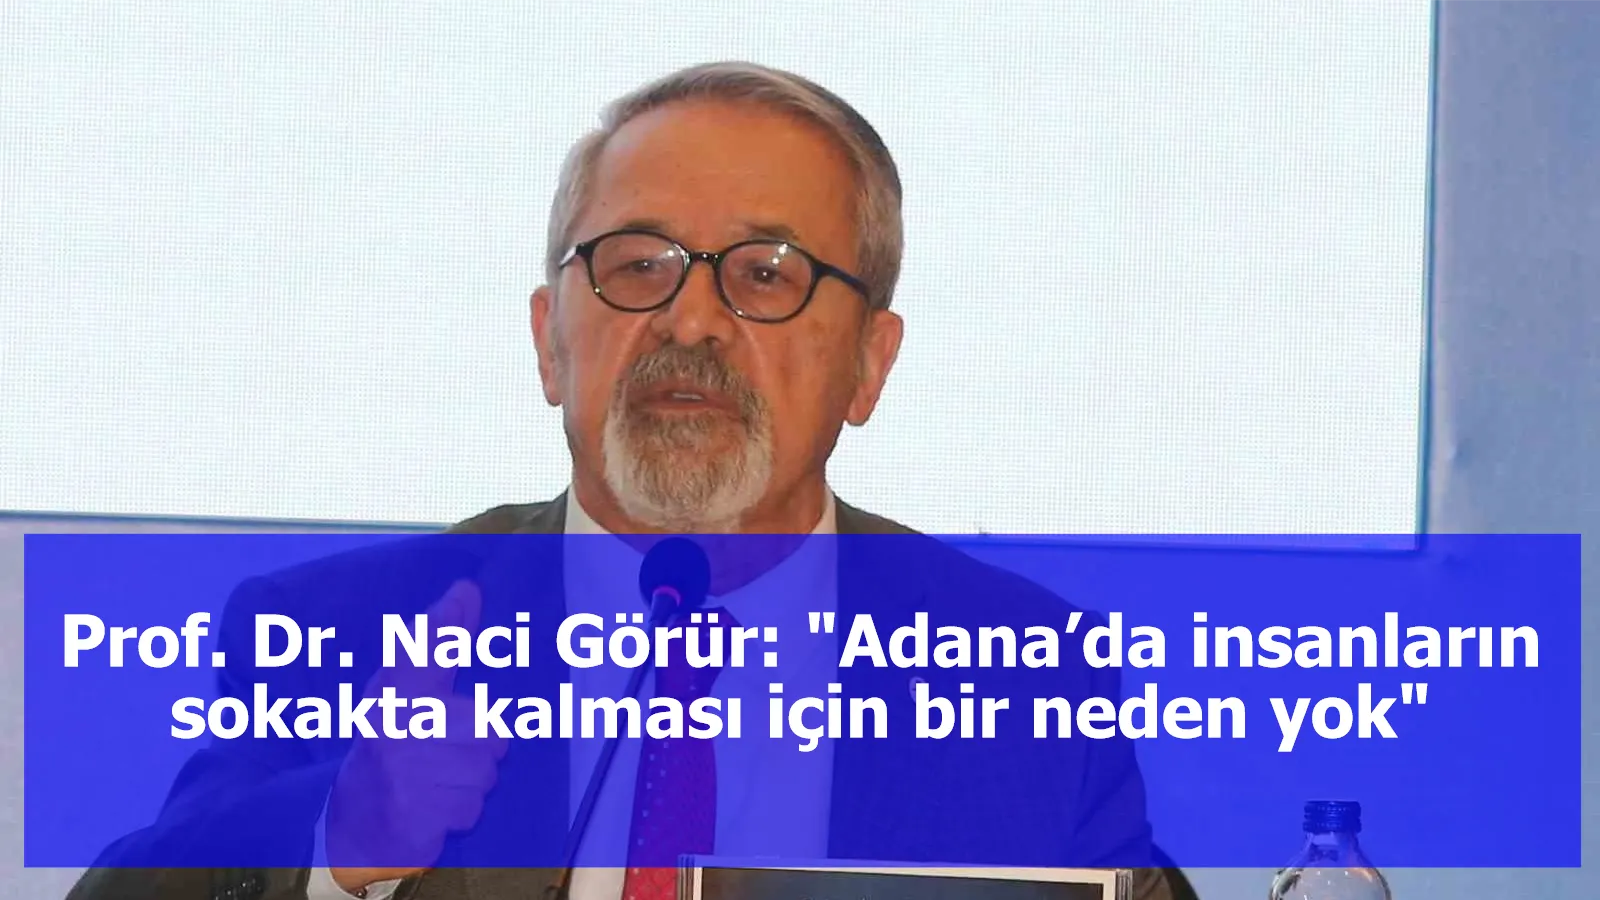 Prof. Dr. Naci Görür: "Adana’da insanların sokakta kalması için bir neden yok"